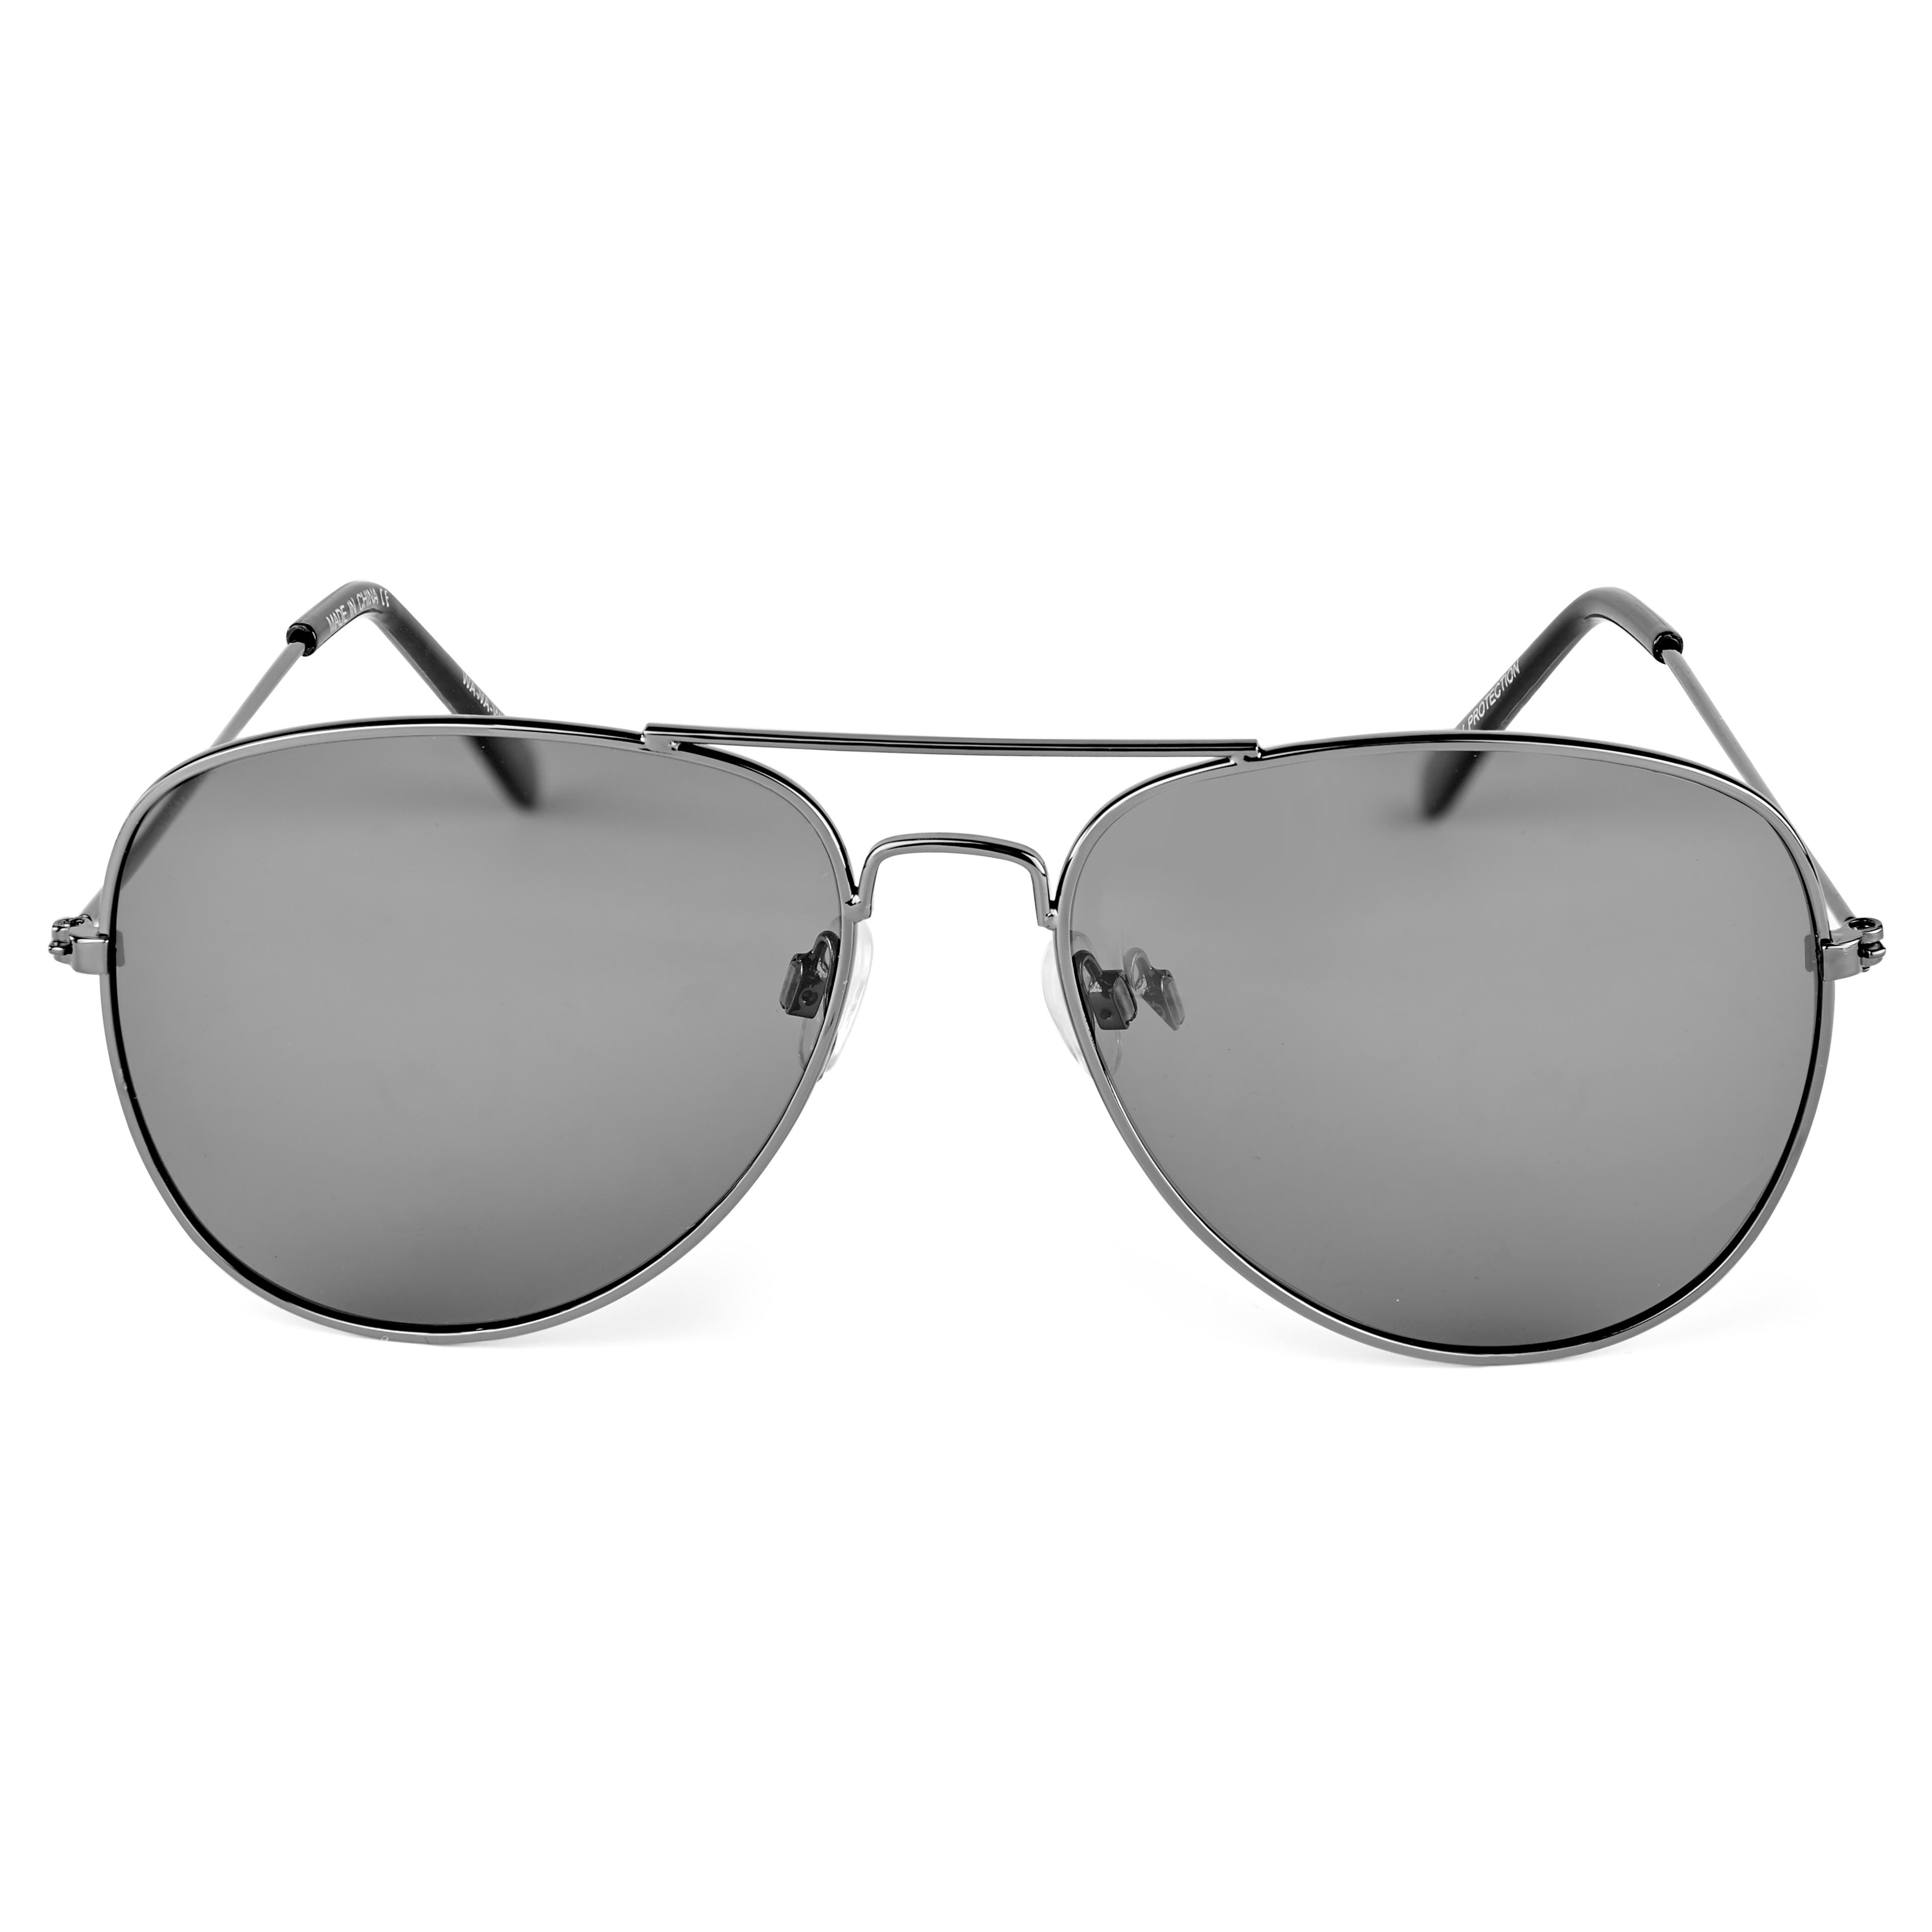 Vista | Black & Dark Grey Aviator Sunglasses